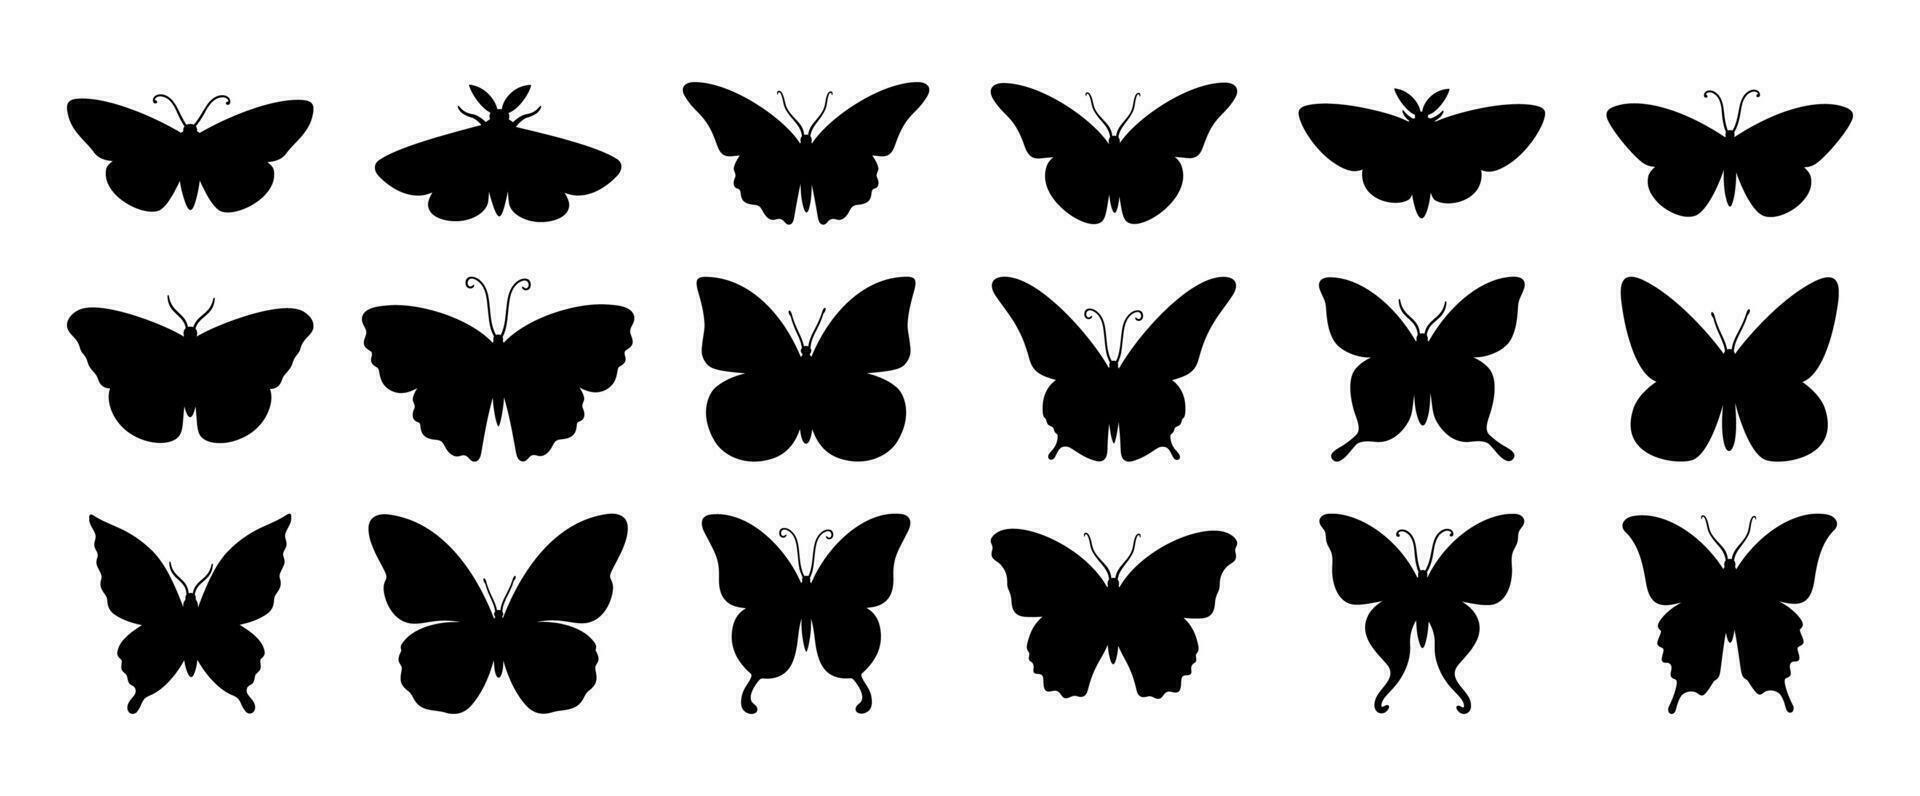 mariposa siluetas linda mariposa plantillas verano insectos con alas, volador mariposas con alas exótico varios polilla decorativo sencillo vector aislado conjunto